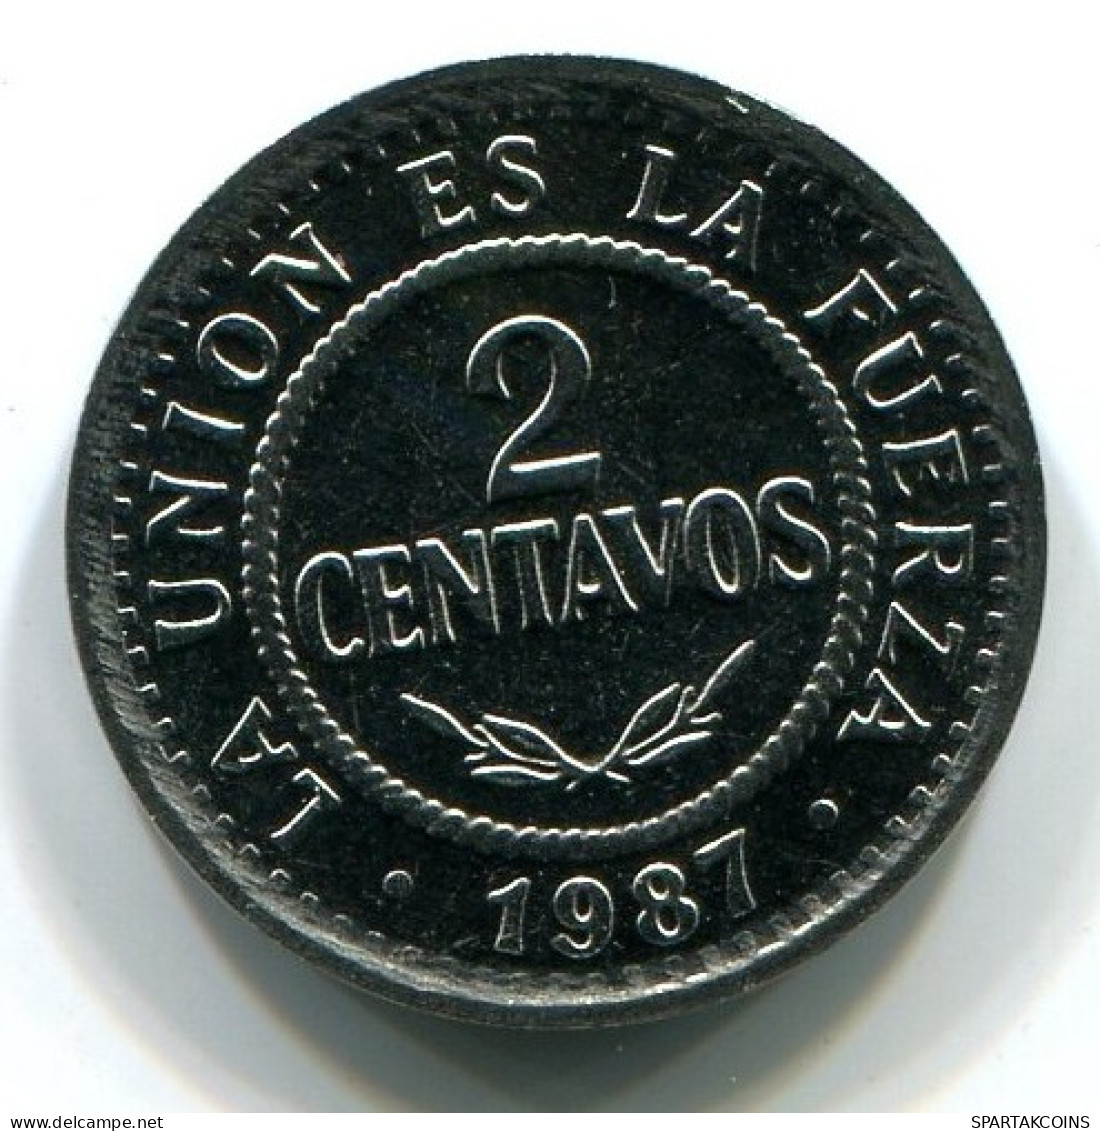 2 CENTAVOS 1987 BOLIVIA Coin UNC #W10942.U.A - Bolivia